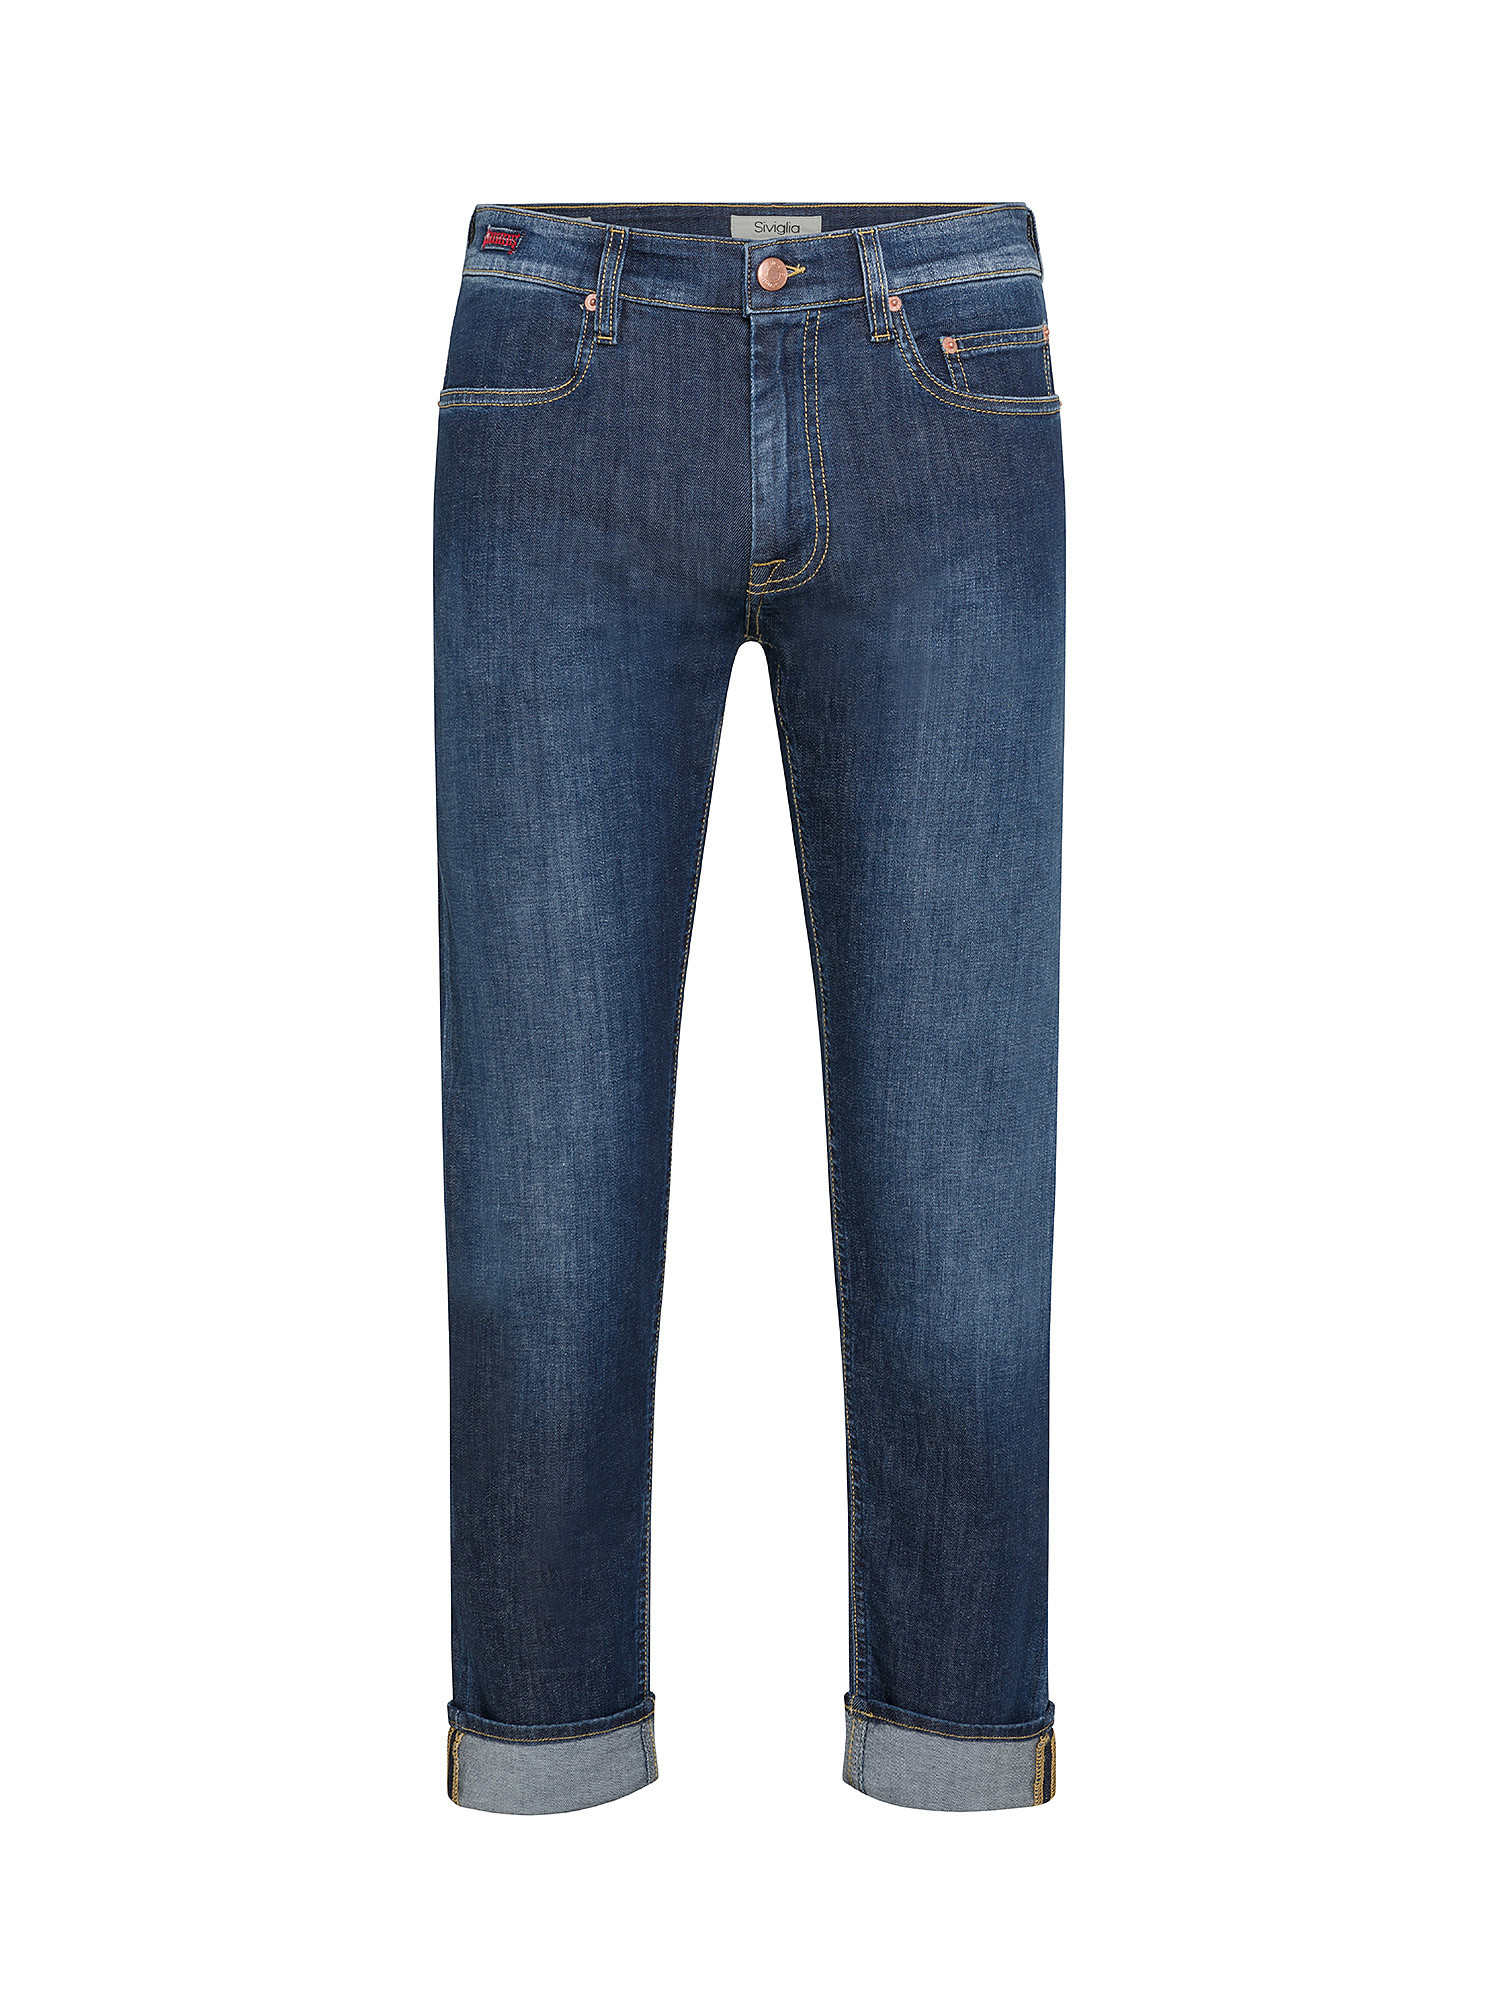 Siviglia - Five pocket jeans, Denim, large image number 0